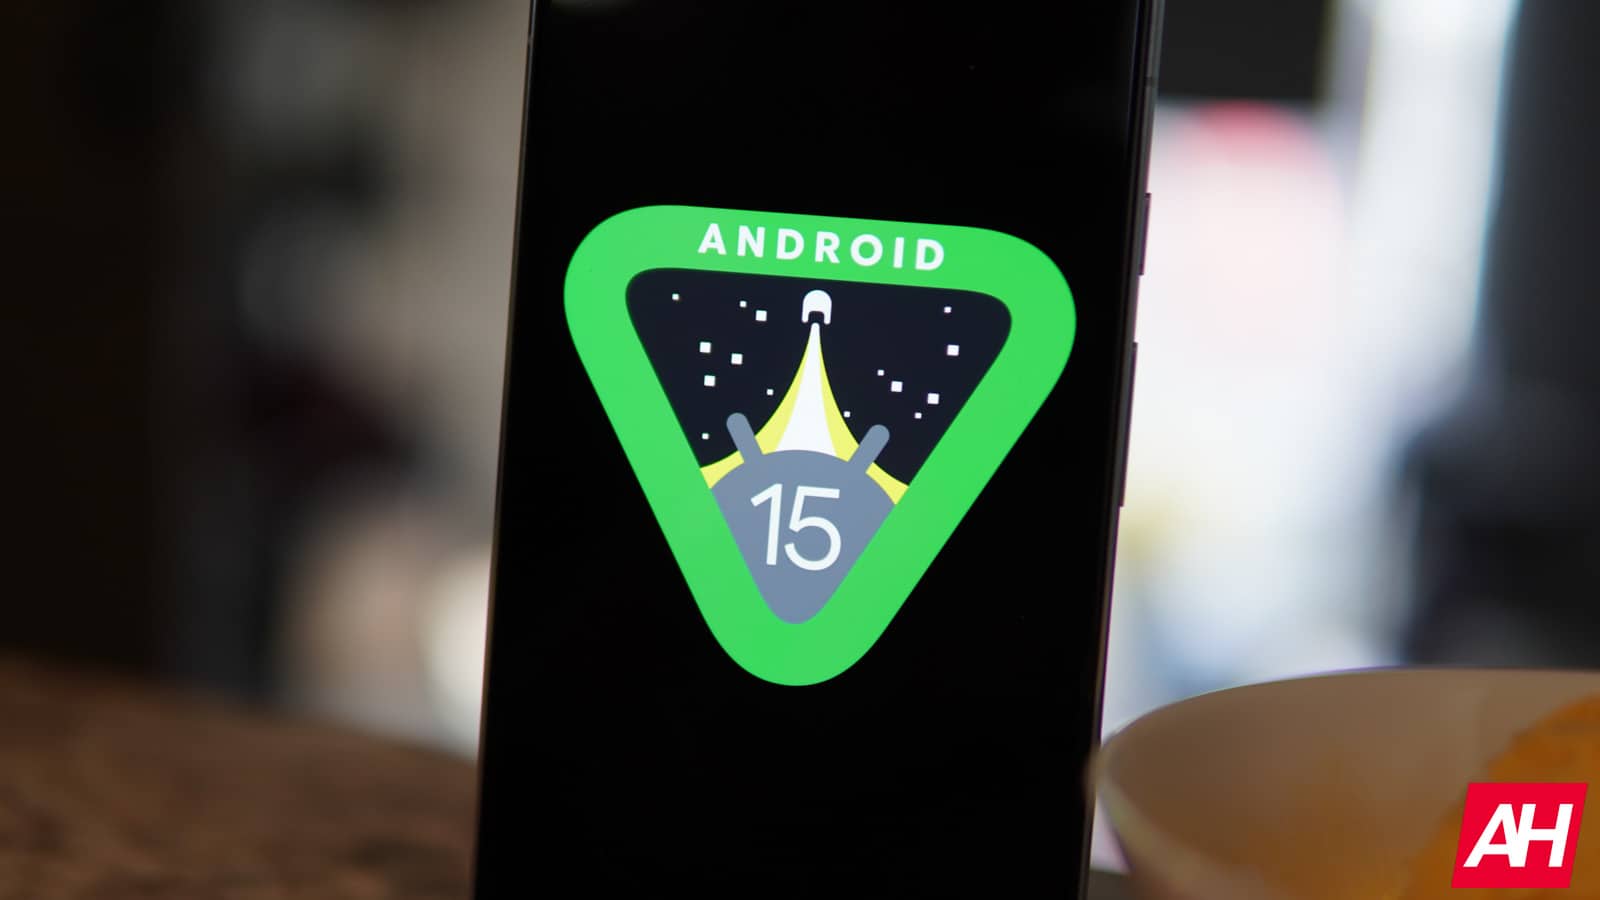 Android 15 traerá soporte de carga inalámbrica a través de NFC